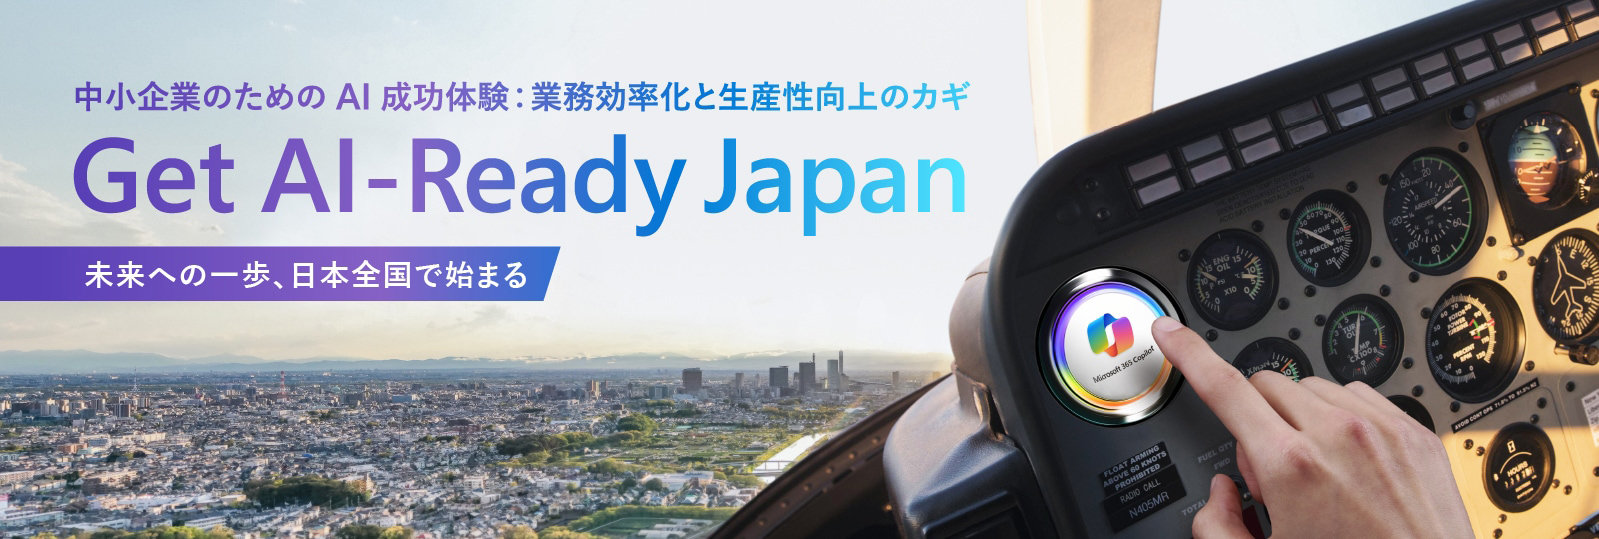 中小企業のためのAI成功体験:業務効率化と生産性向上のカギ Get Al-Ready Japan 未来への一歩、日本全国で始まる